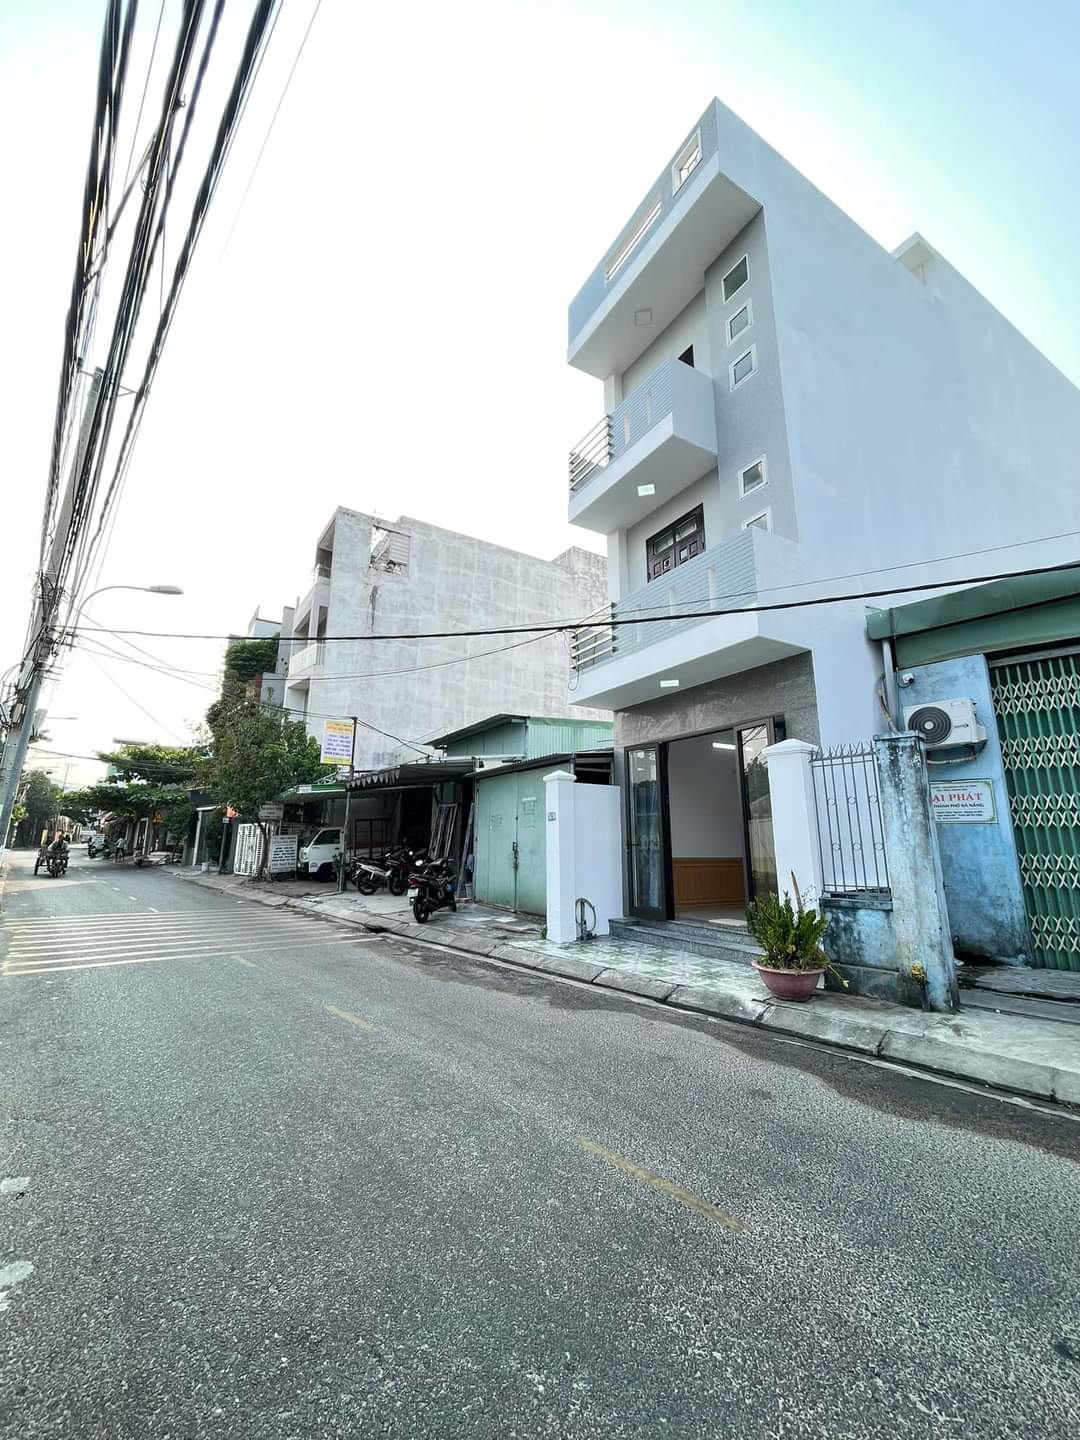 🔴Bán nhà 4 tầng 4 mê MT đường Nguyễn Phước Nguyên, Thanh Khê, Đà Nẵng - Ảnh 1